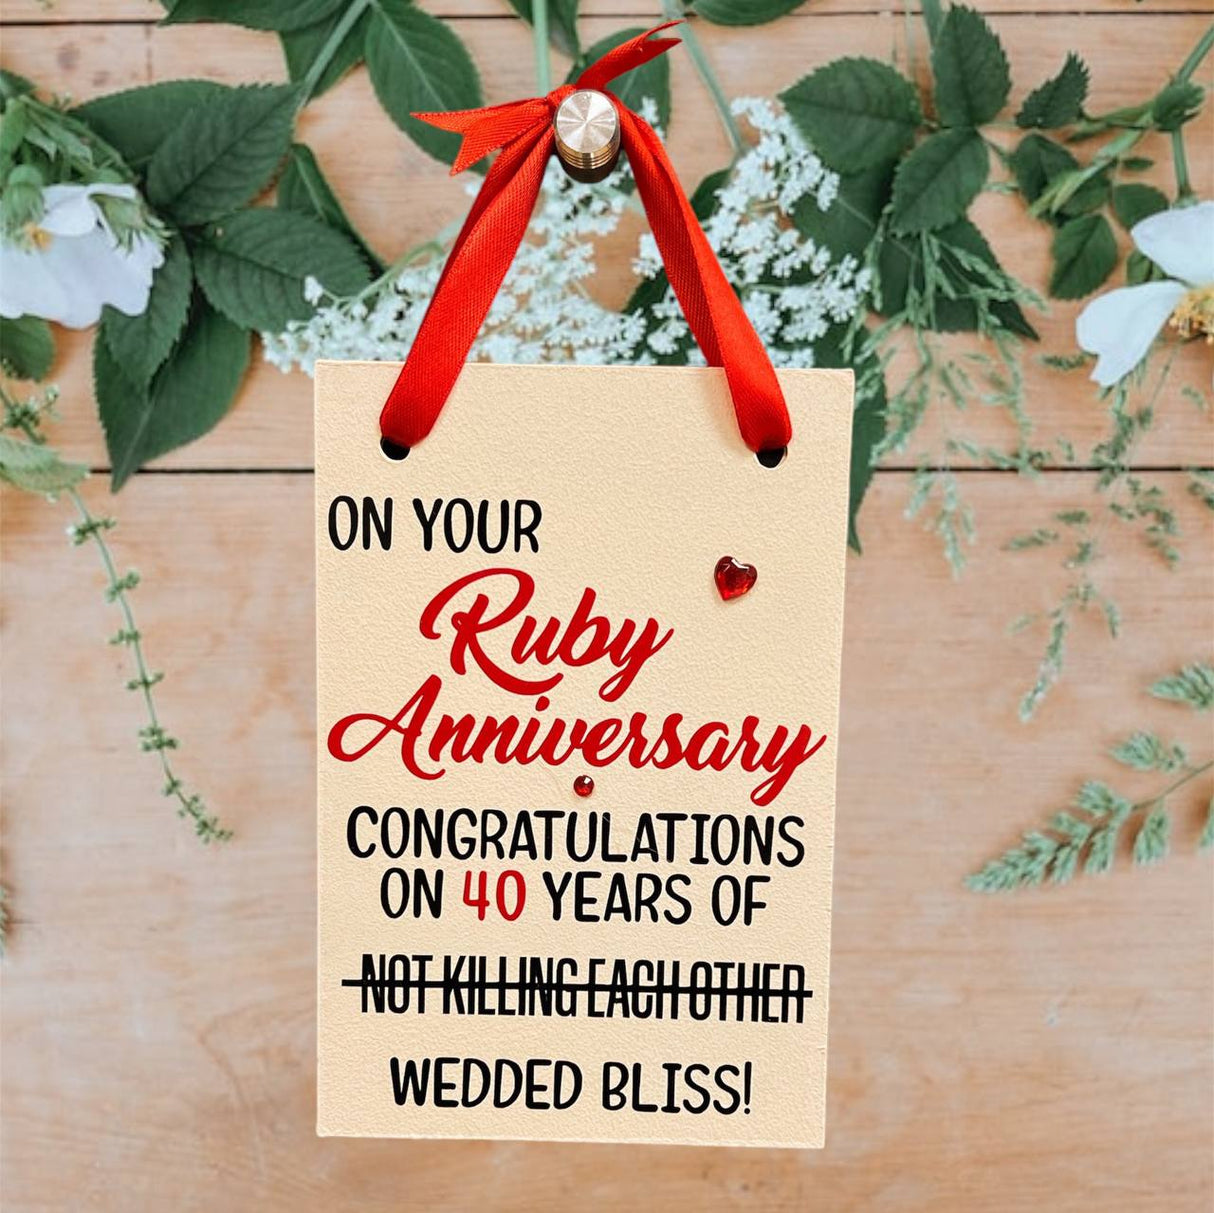 Aniversario de Ruby - ¡Felicidad conyugal!